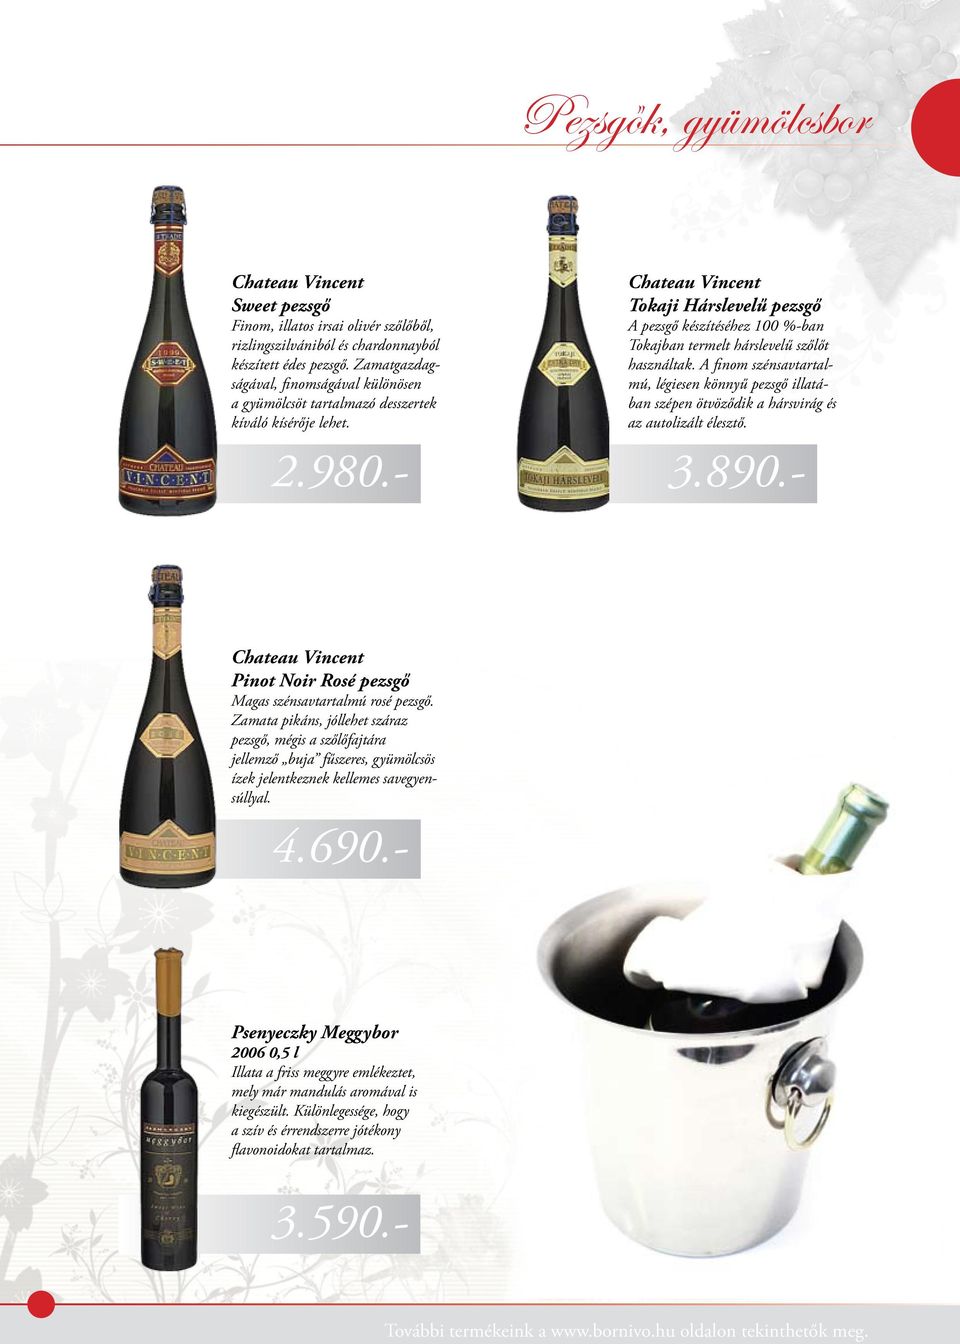 - Chateau Vincent Tokaji Hárslevelű pezsgő A pezsgő készítéséhez 100 %-ban Tokajban termelt hárslevelű szőlőt használtak.